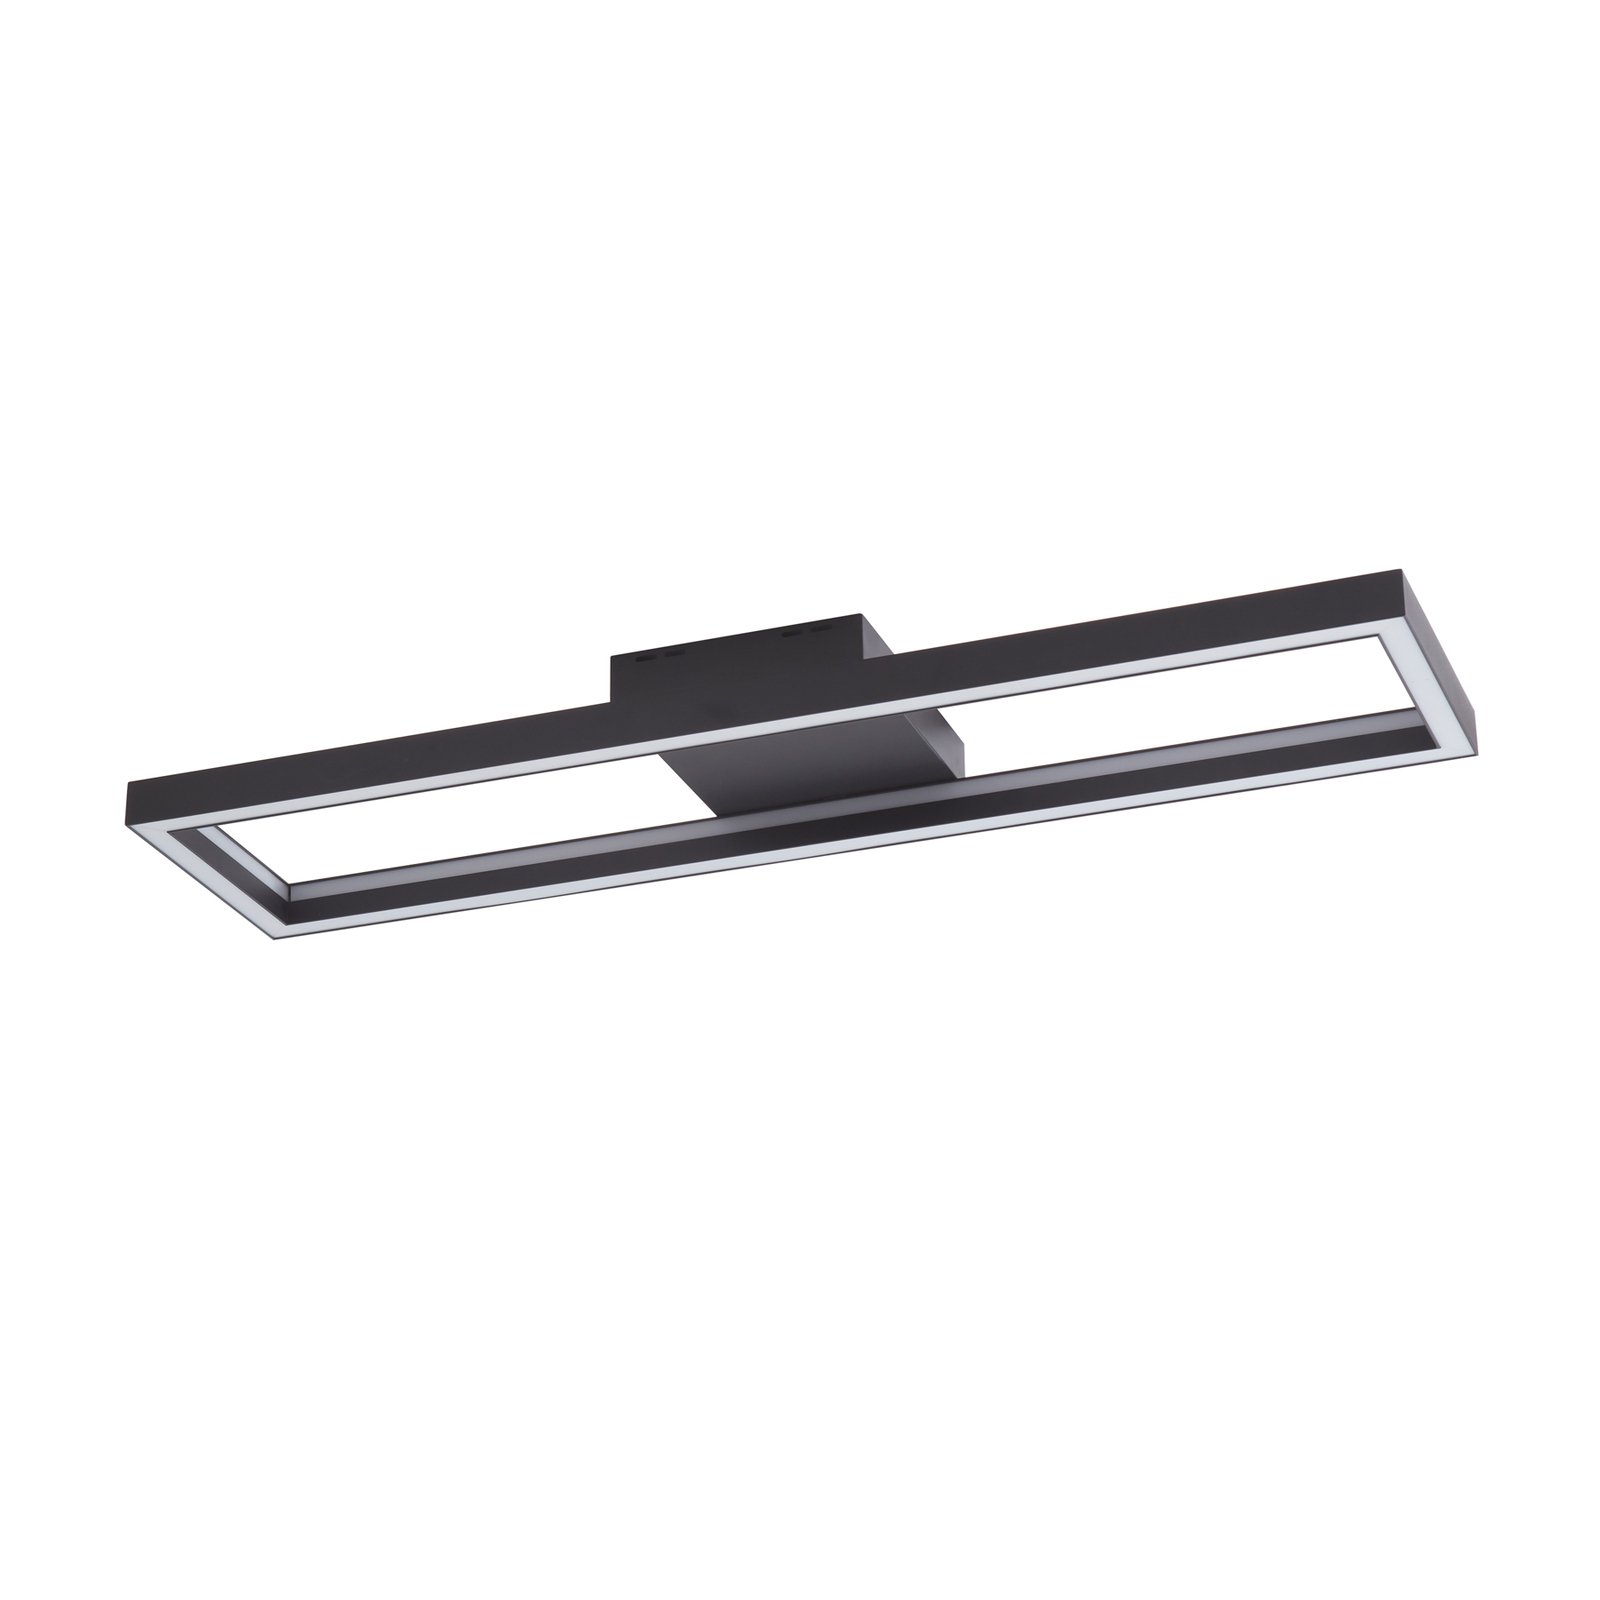 Lucande Smart LED kattovalaisin Tjado, musta, 100cm